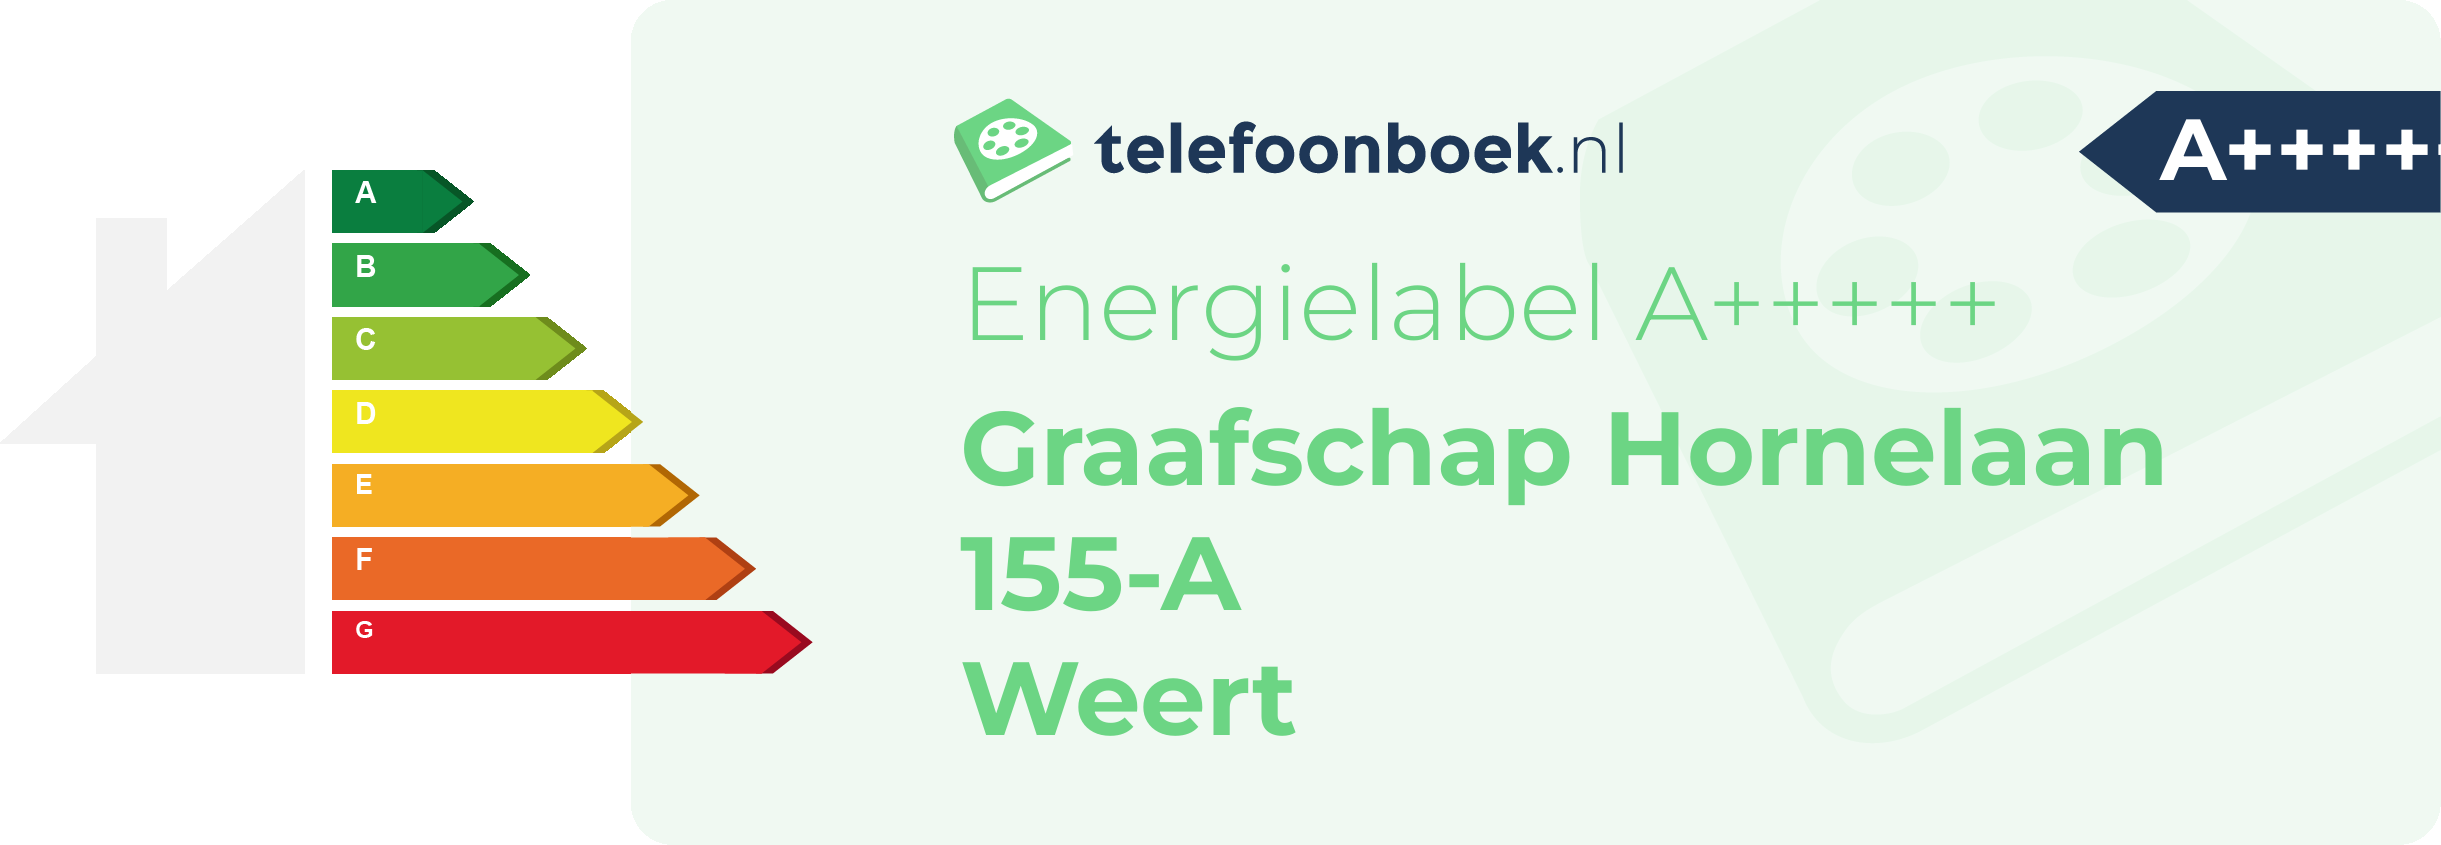 Energielabel Graafschap Hornelaan 155-A Weert